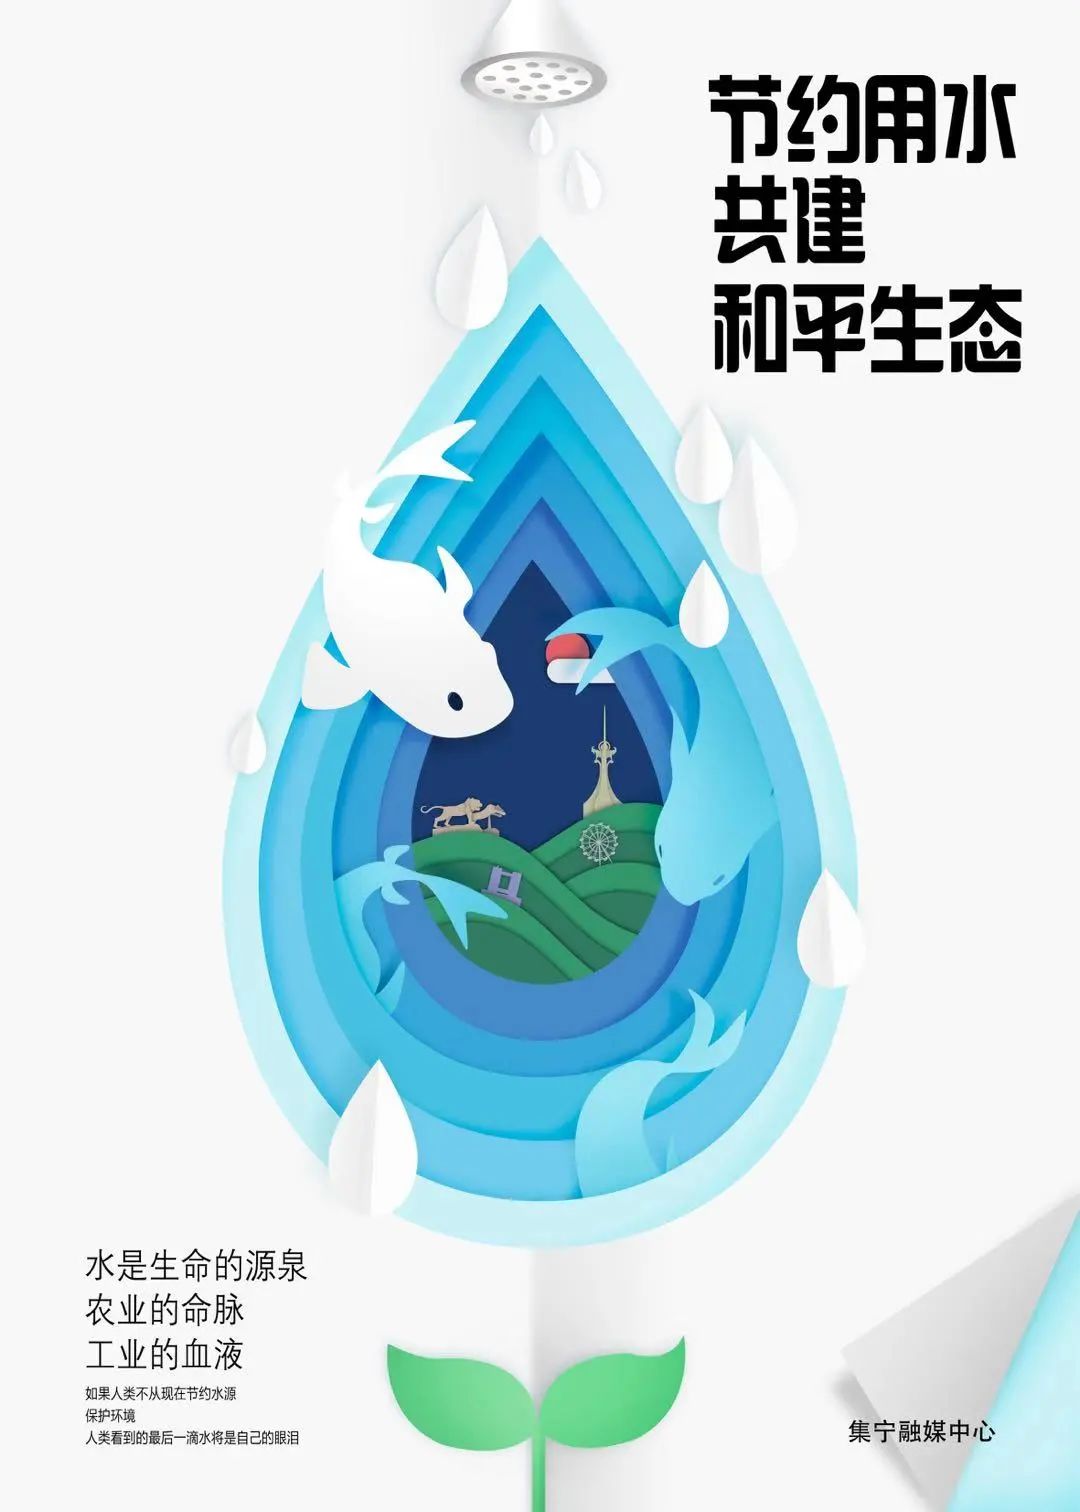 【微公益】集宁区推出原创节约用水公益海报 节约用水